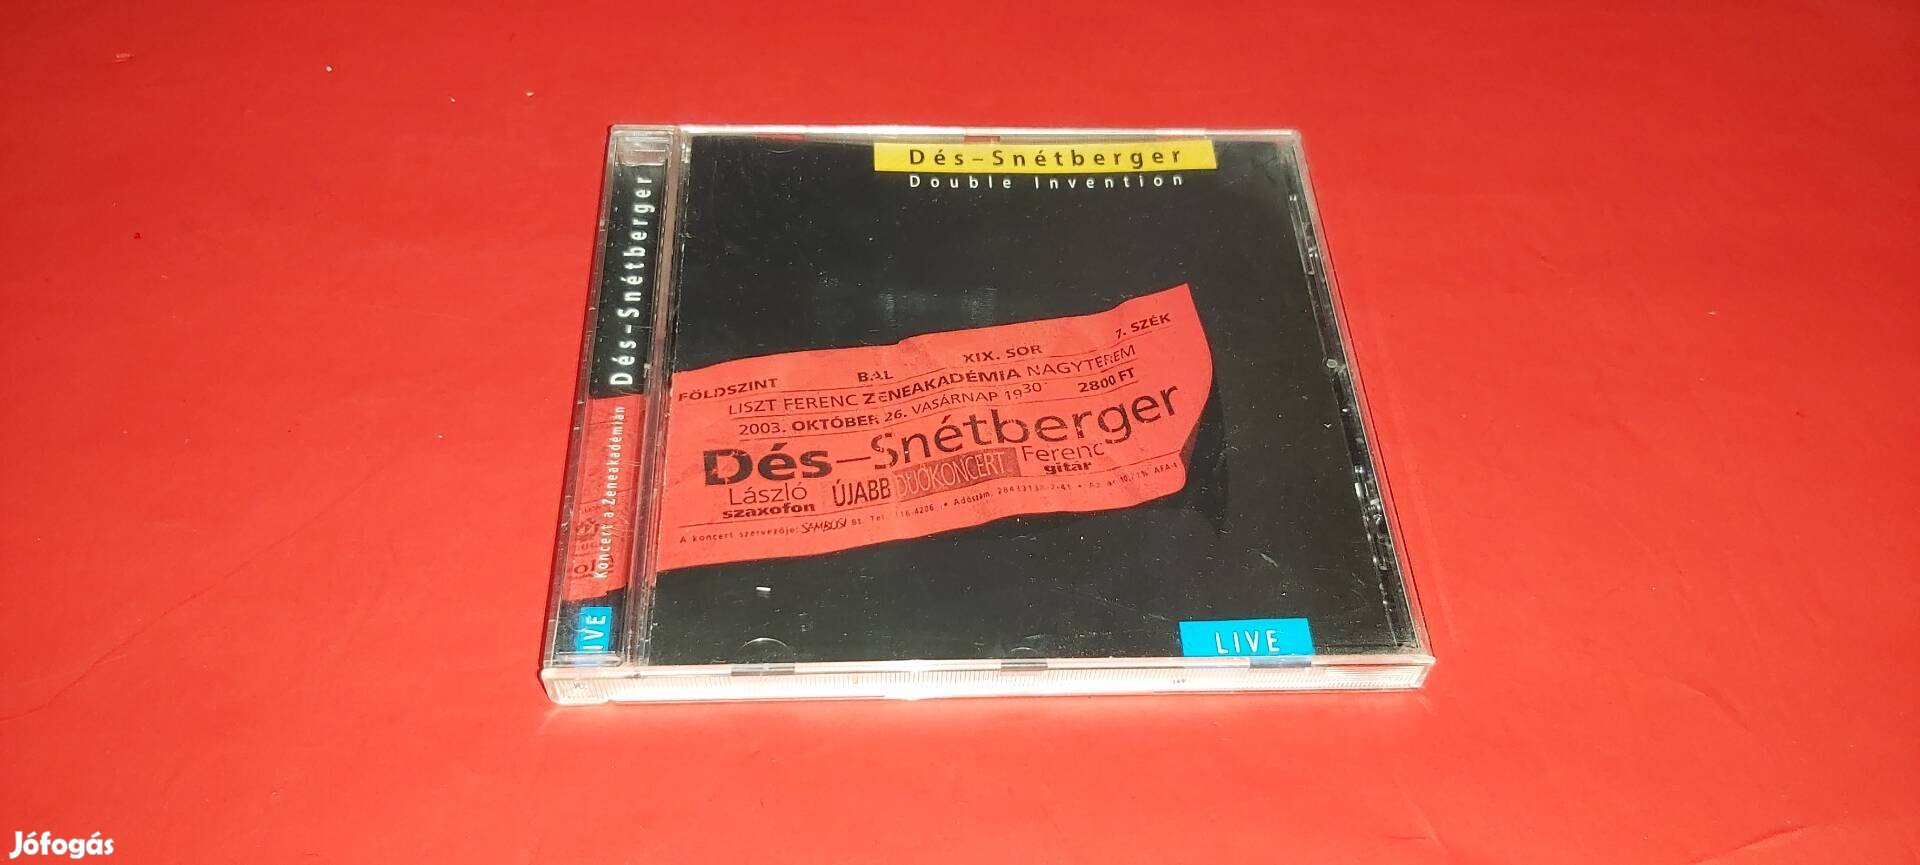 Dés-Snétberger Concert 2003 Cd